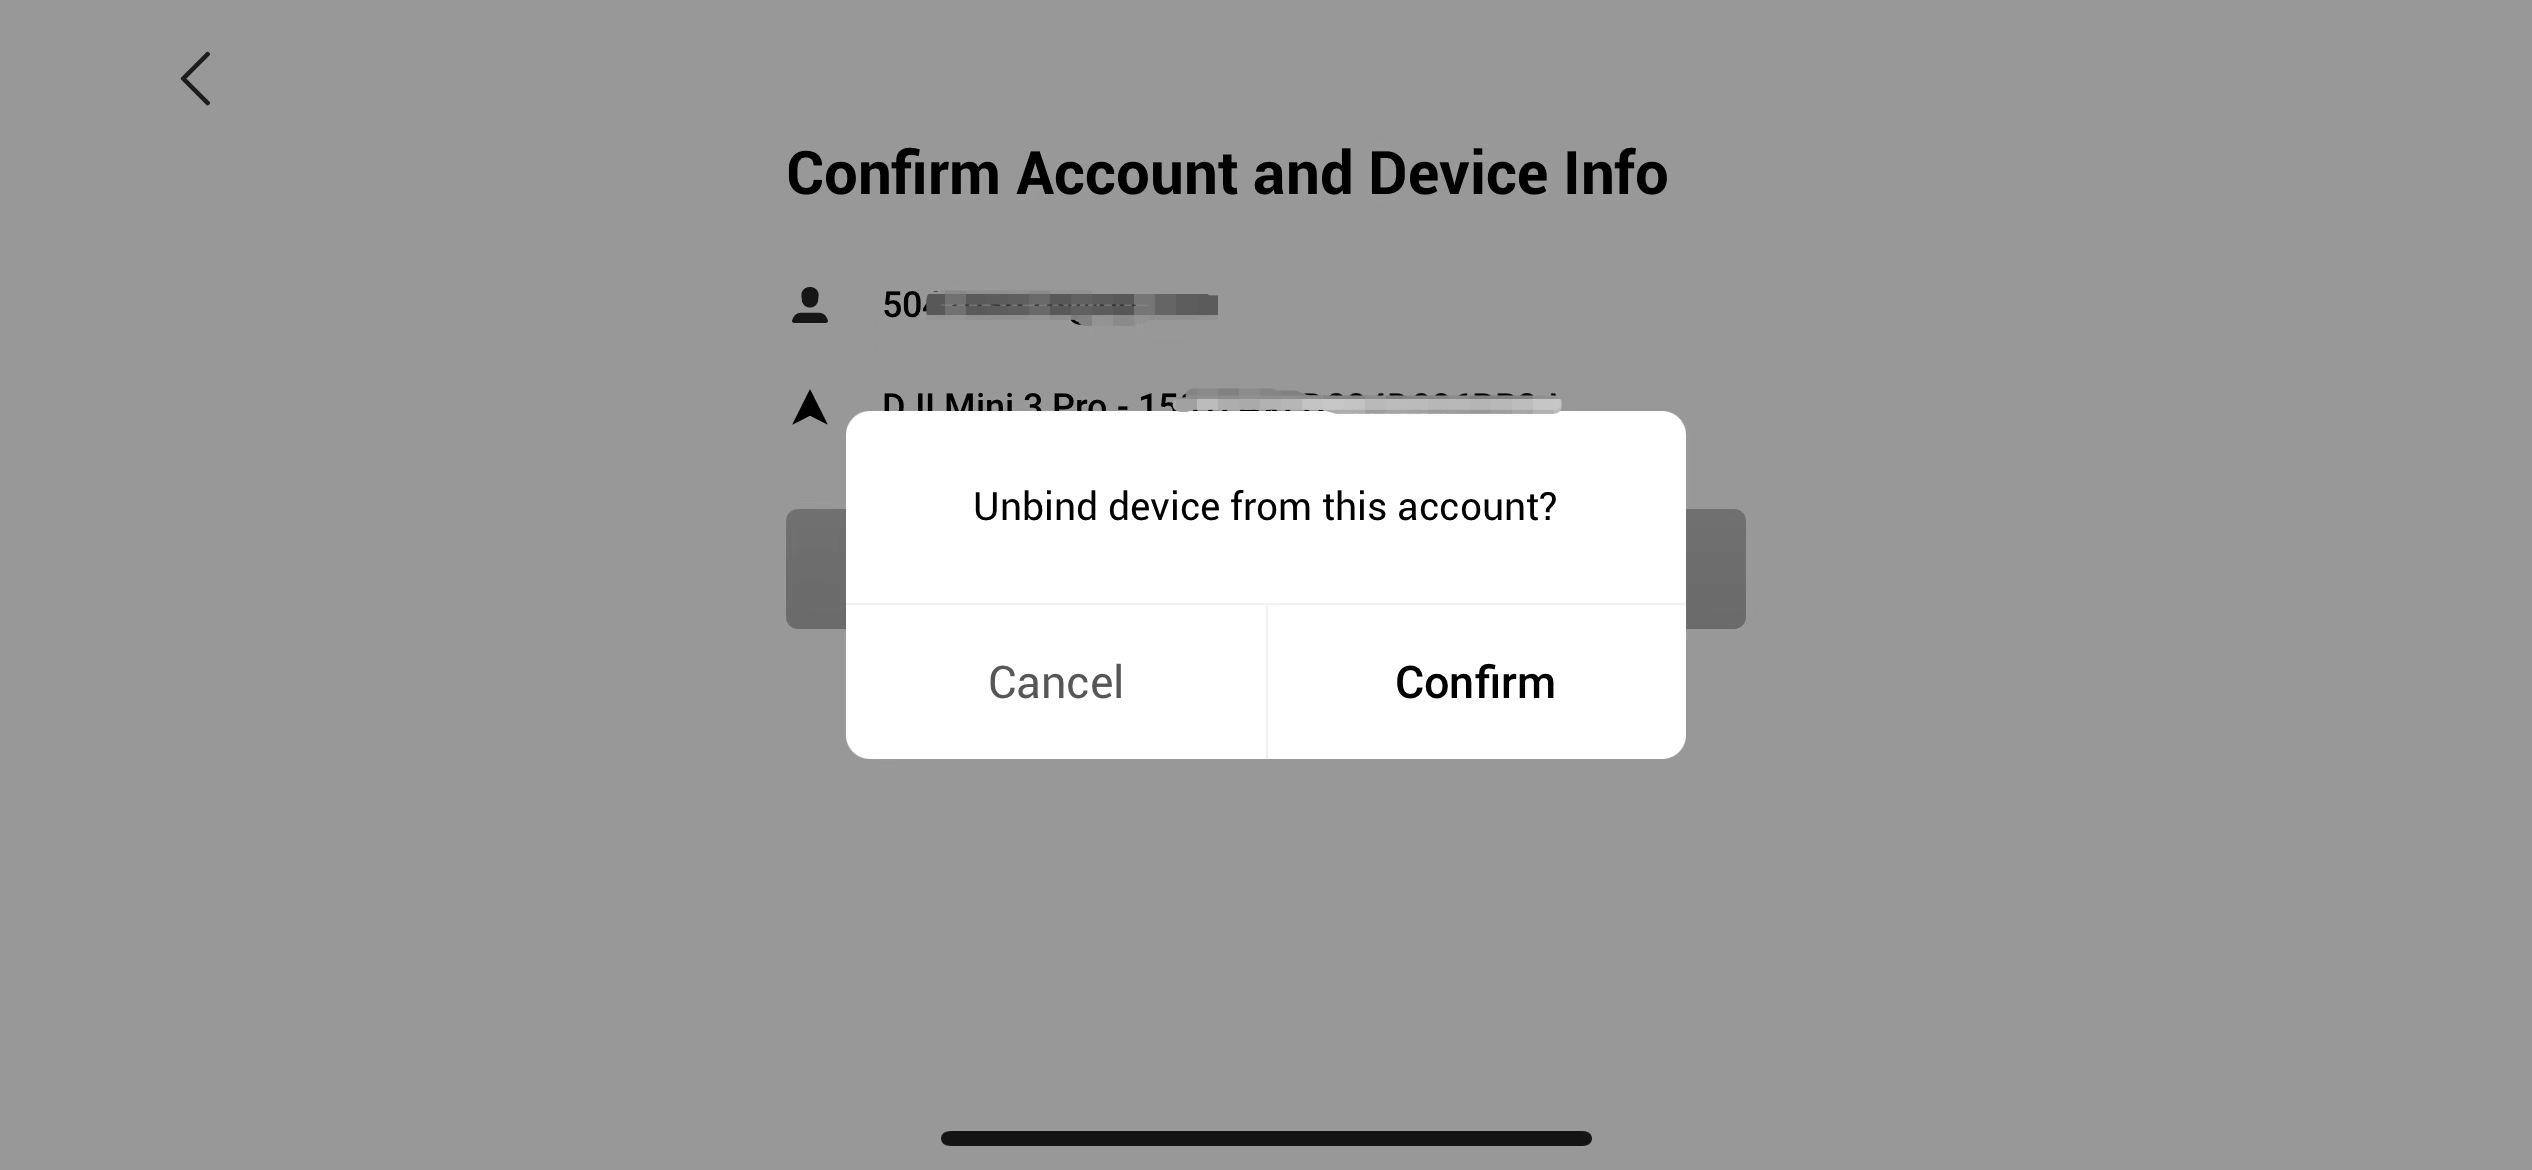 En skärmbild som visar en bekräftelsedialogruta med texten "Unbind device from this account?" och två alternativ: "Cancel" och "Confirm". Bakgrunden visar en sida med rubriken "Confirm Account and Device Info".